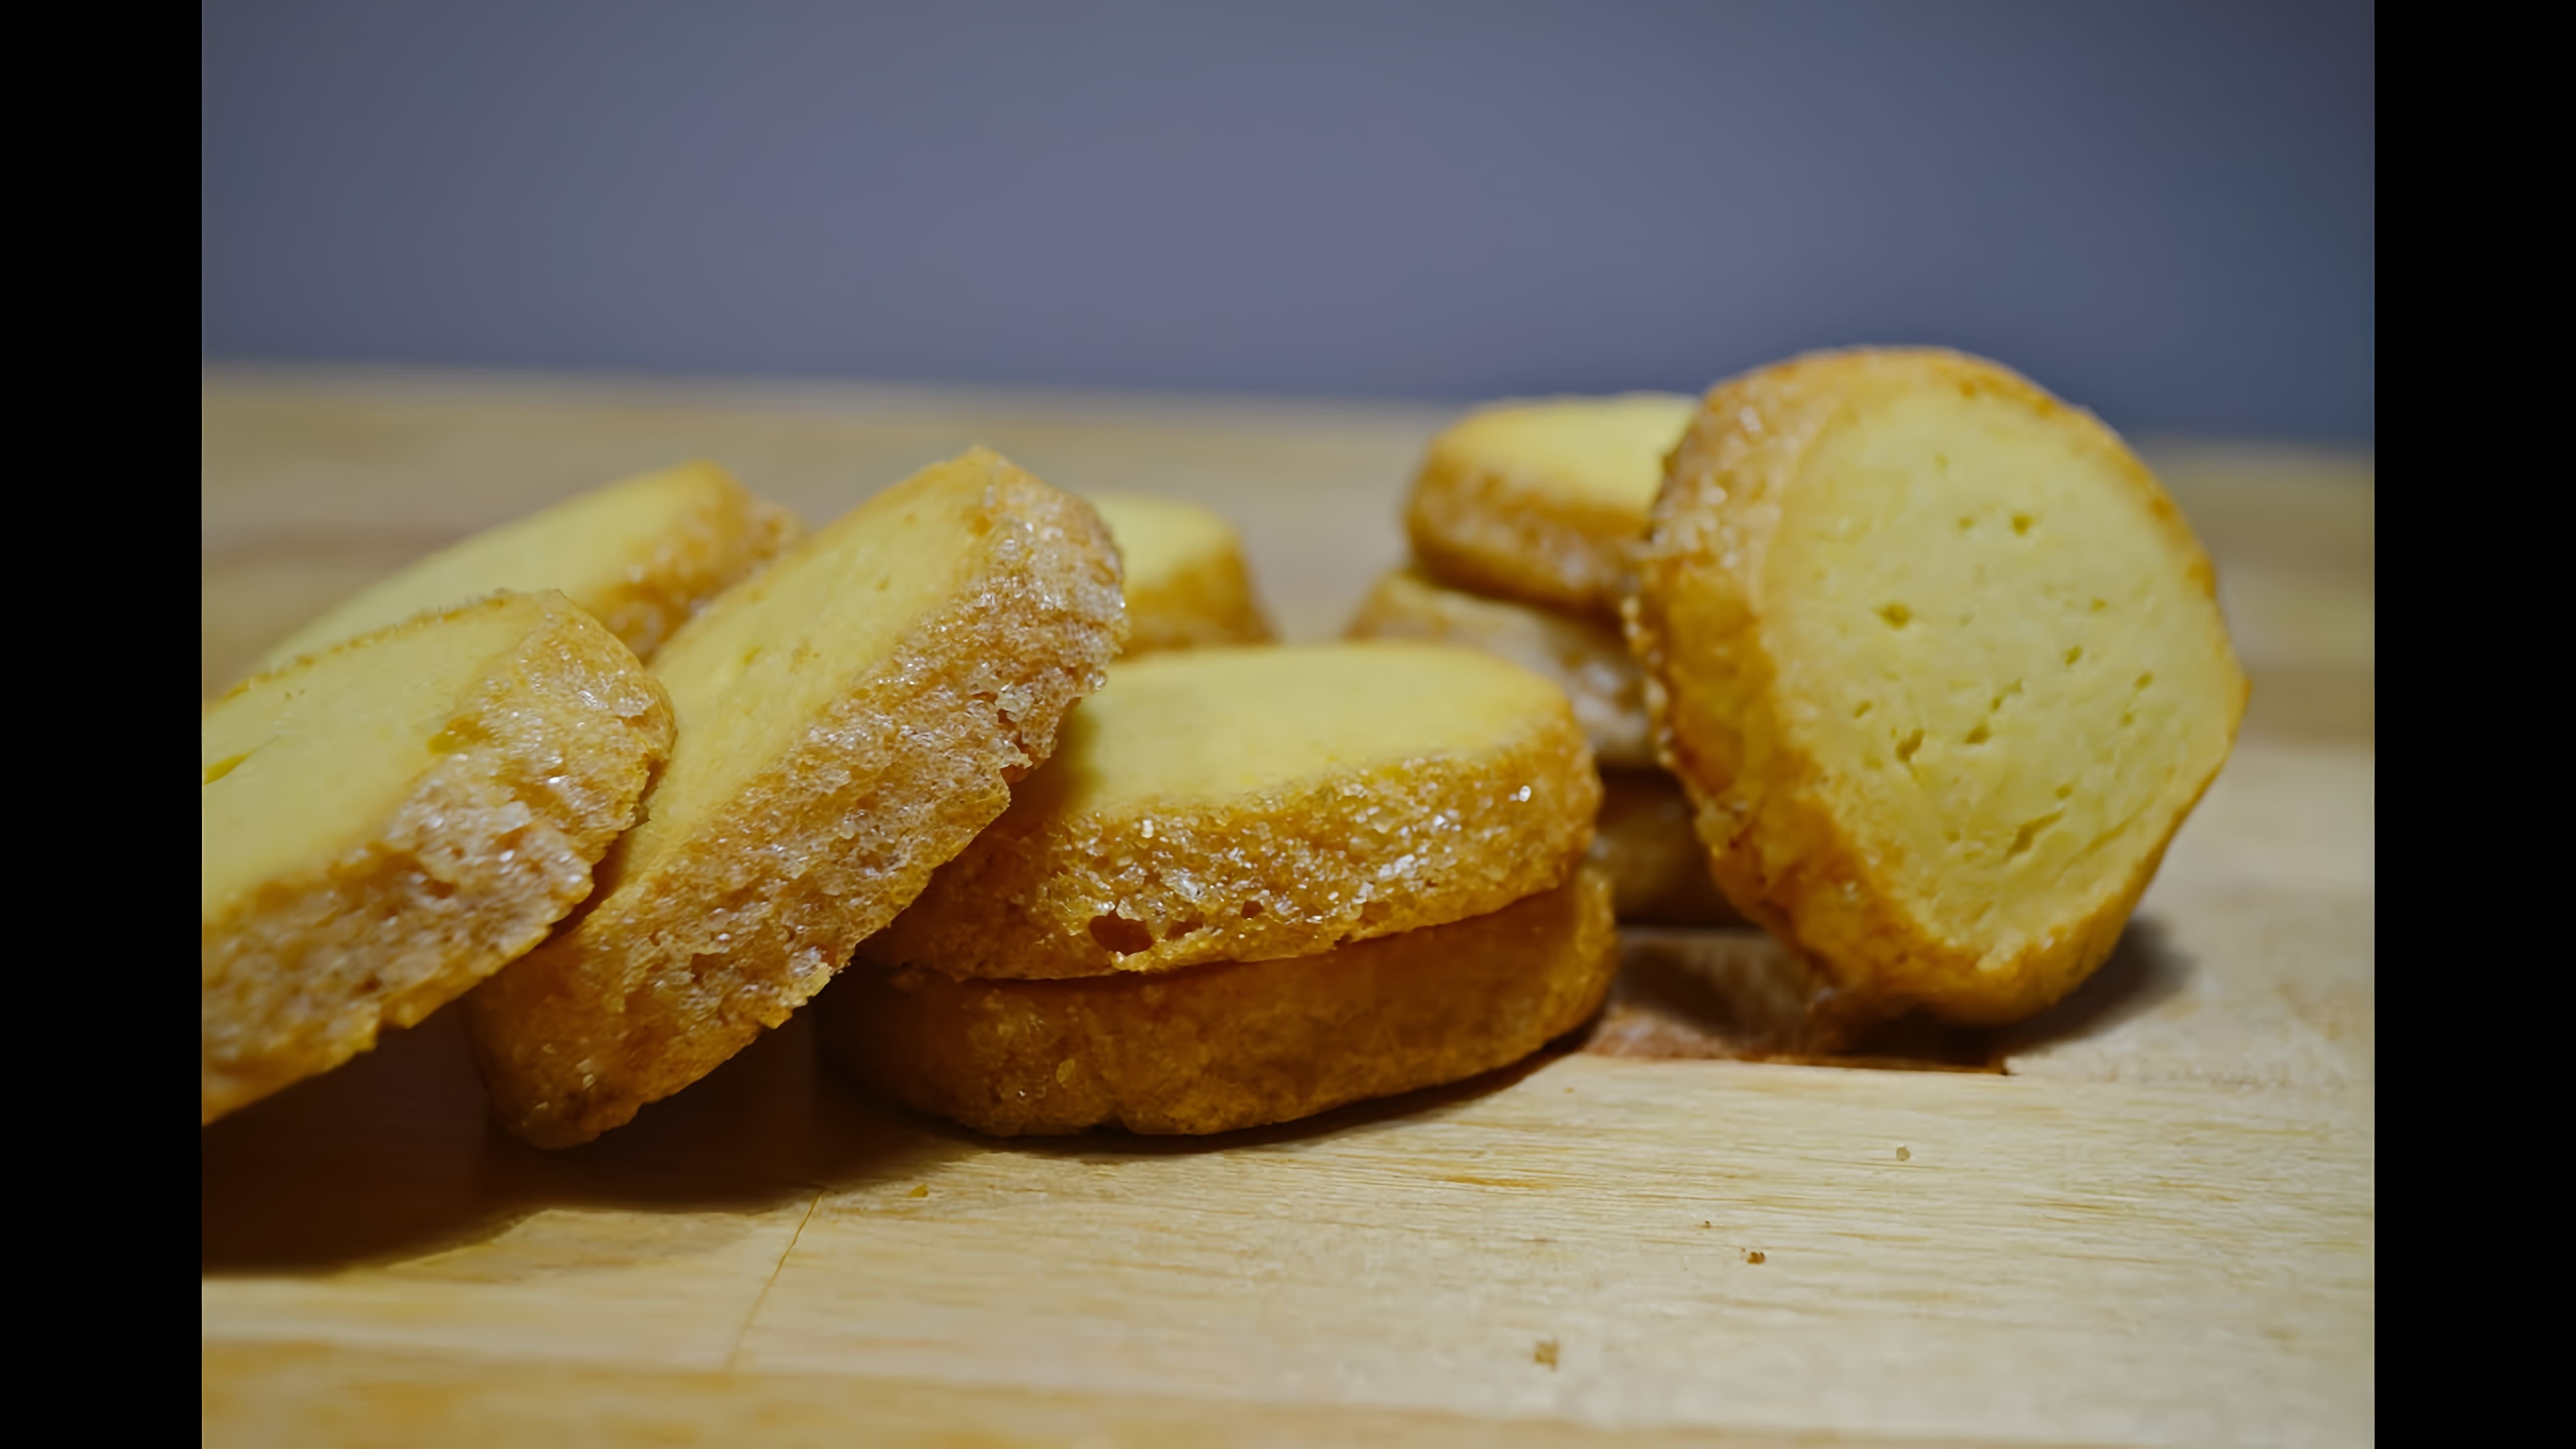 Французское печенье "Сабле" - это идеальное песочное печенье, которое стало популярным благодаря своему нежному и хрустящему вкусу